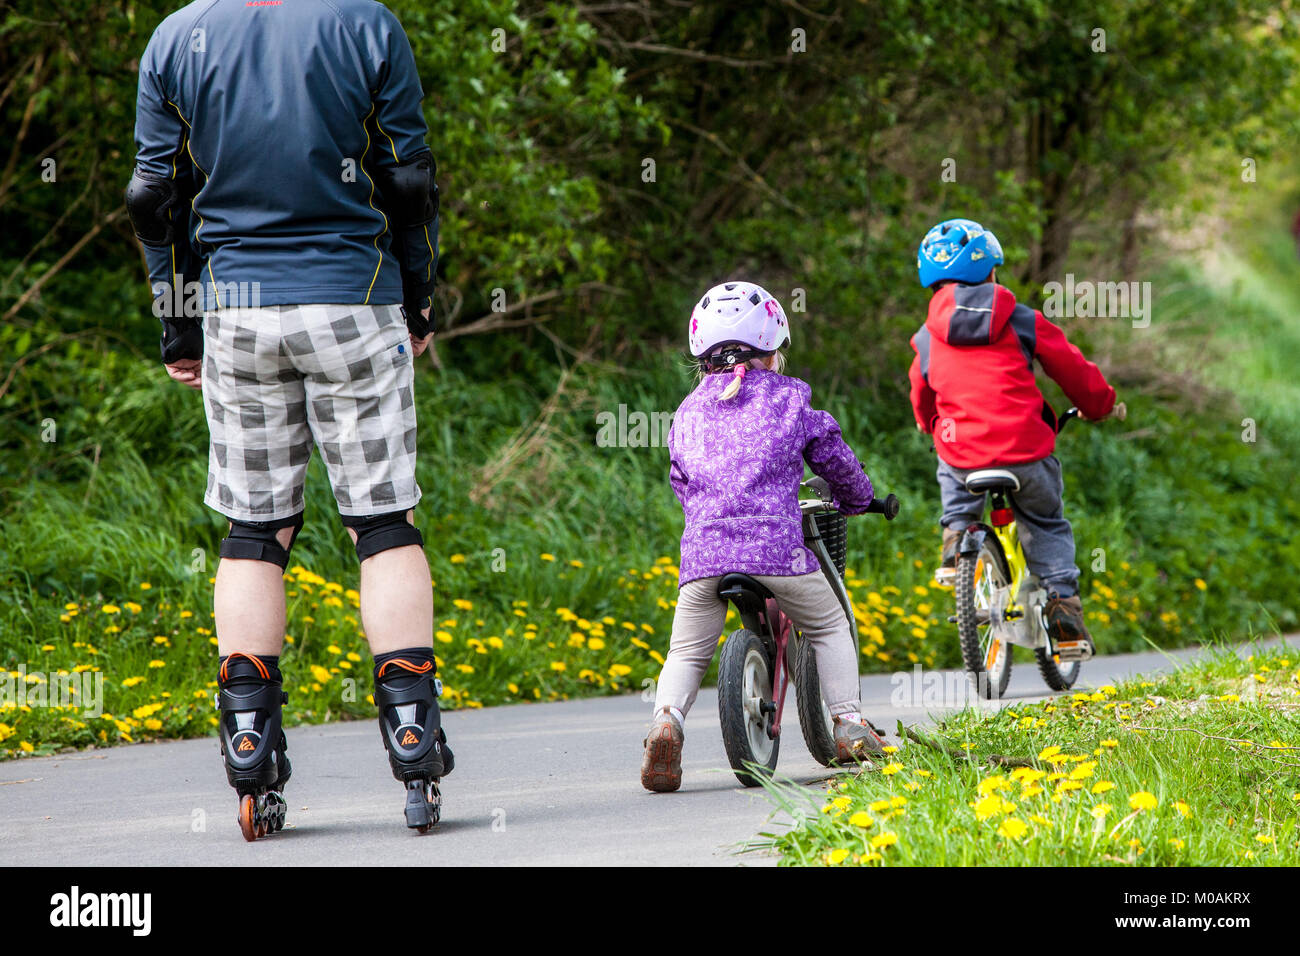 Bambini sotto la supervisione dei genitori due bambini vanno in bicicletta e padre su pattini a rotelle Foto Stock